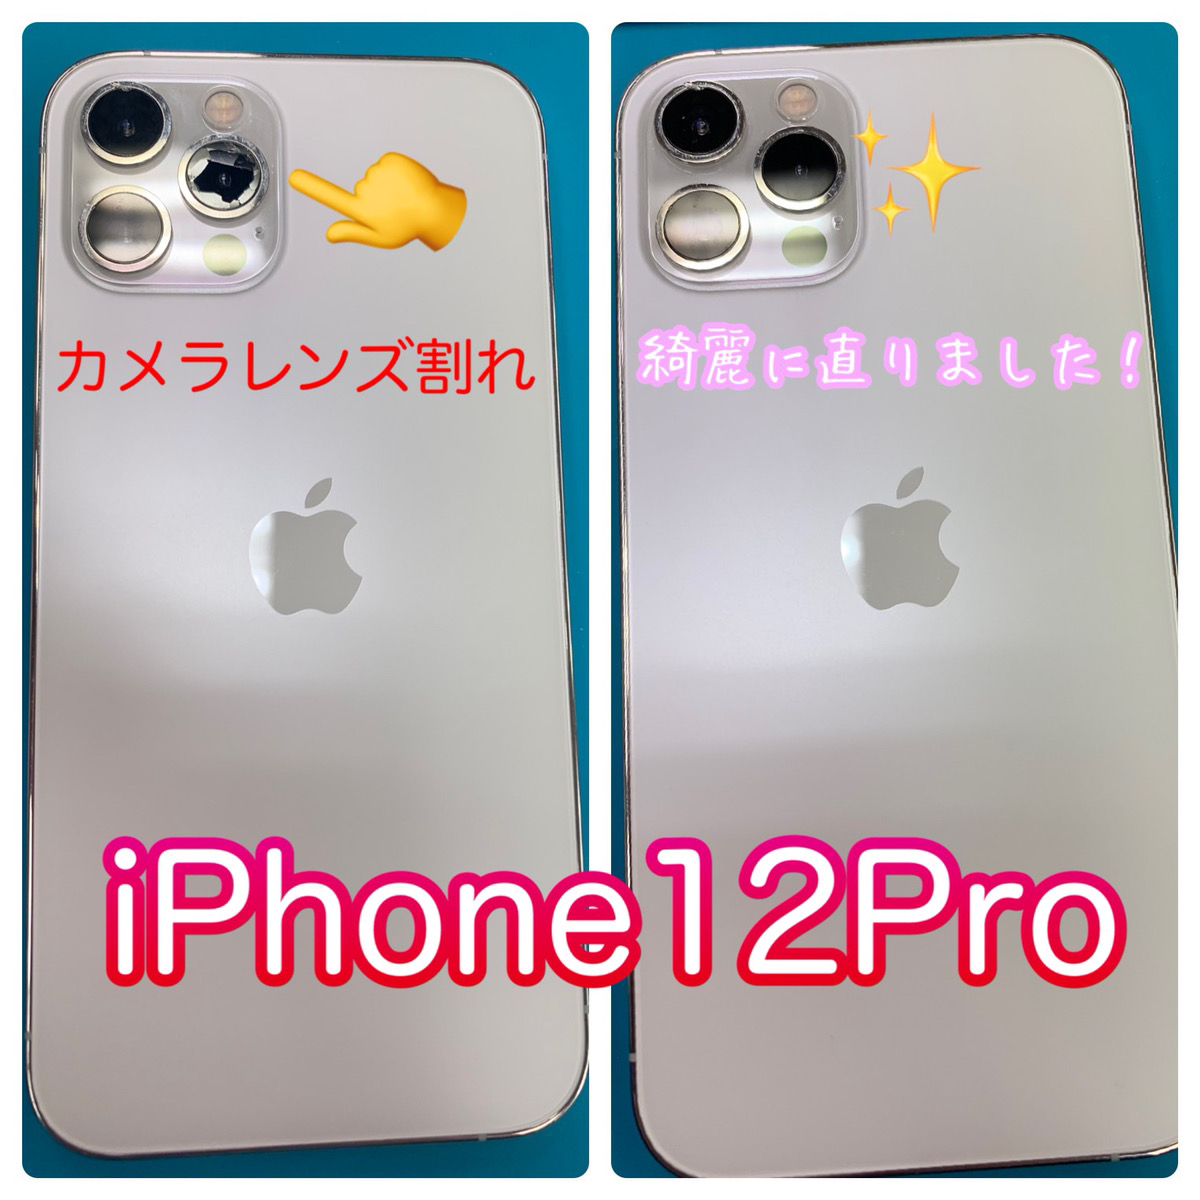 アイフォン iPhone 12 pro 背面カメラ アウトカメラ レンズ 割れ 修理